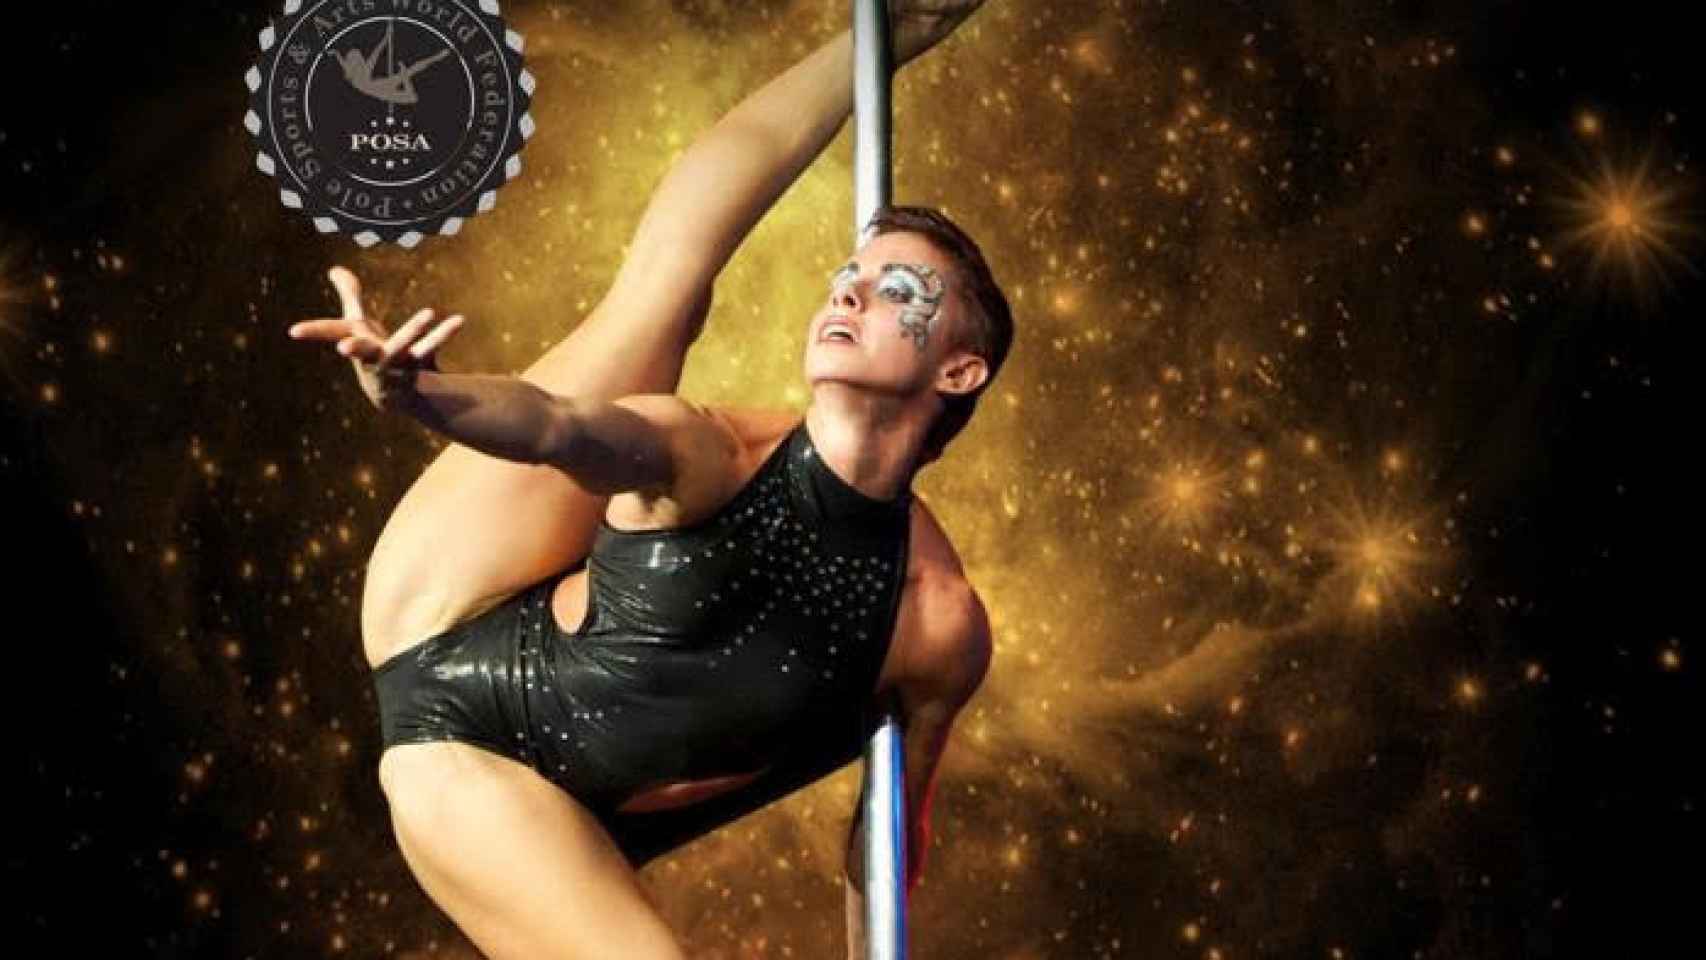 Cartel del campeonato mundial de 'pole dance' que se celebrará en Barcelona